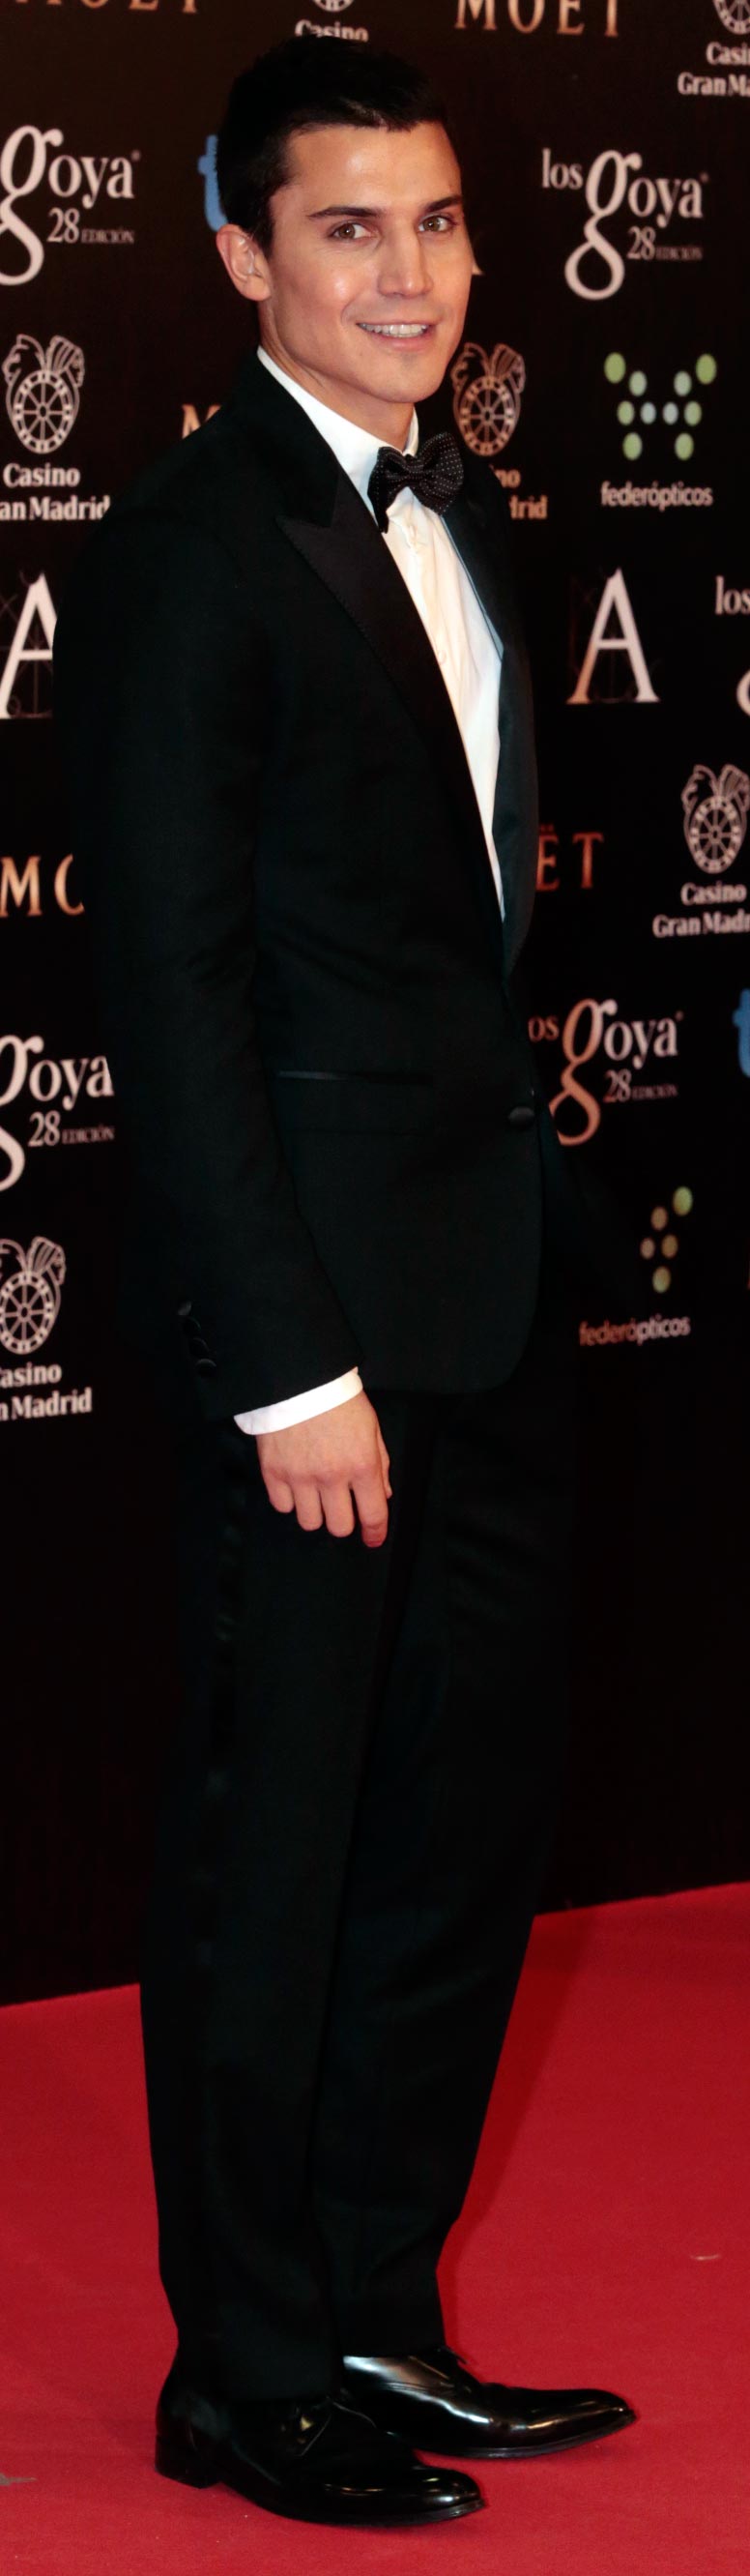 Álex González Premios Goya 2014